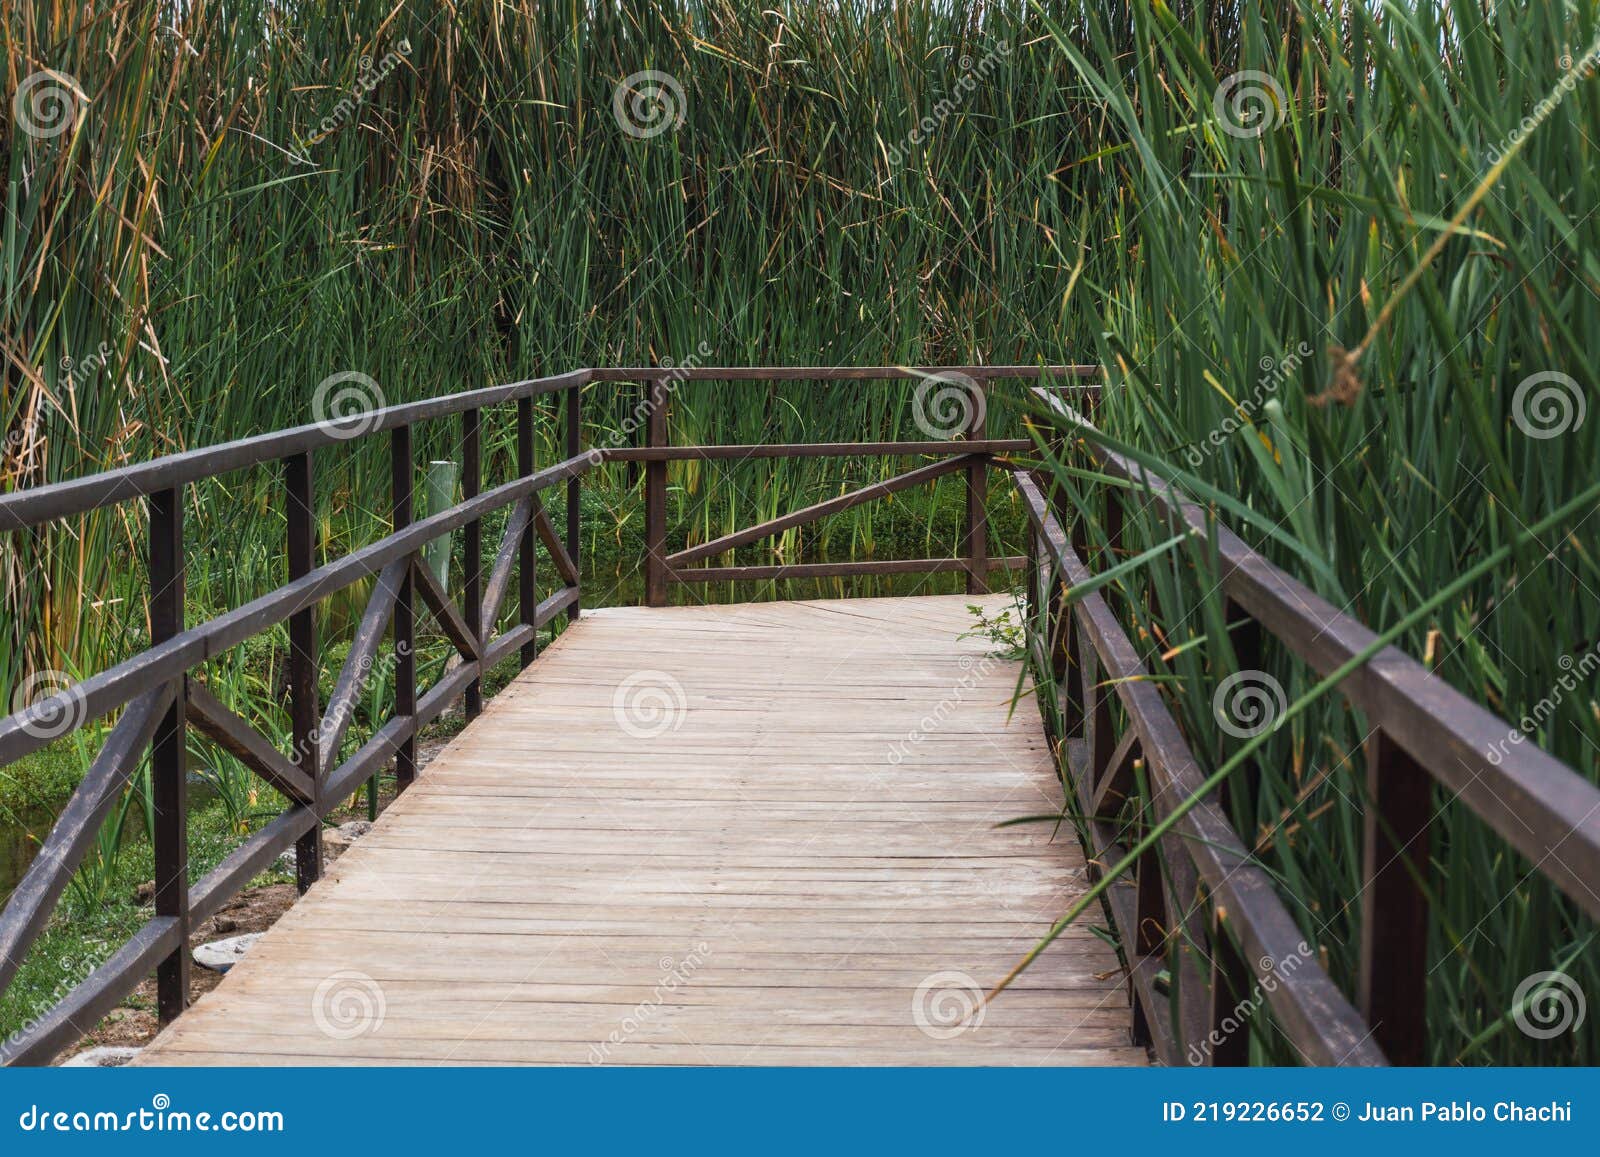 wooden path in pantanos de villa